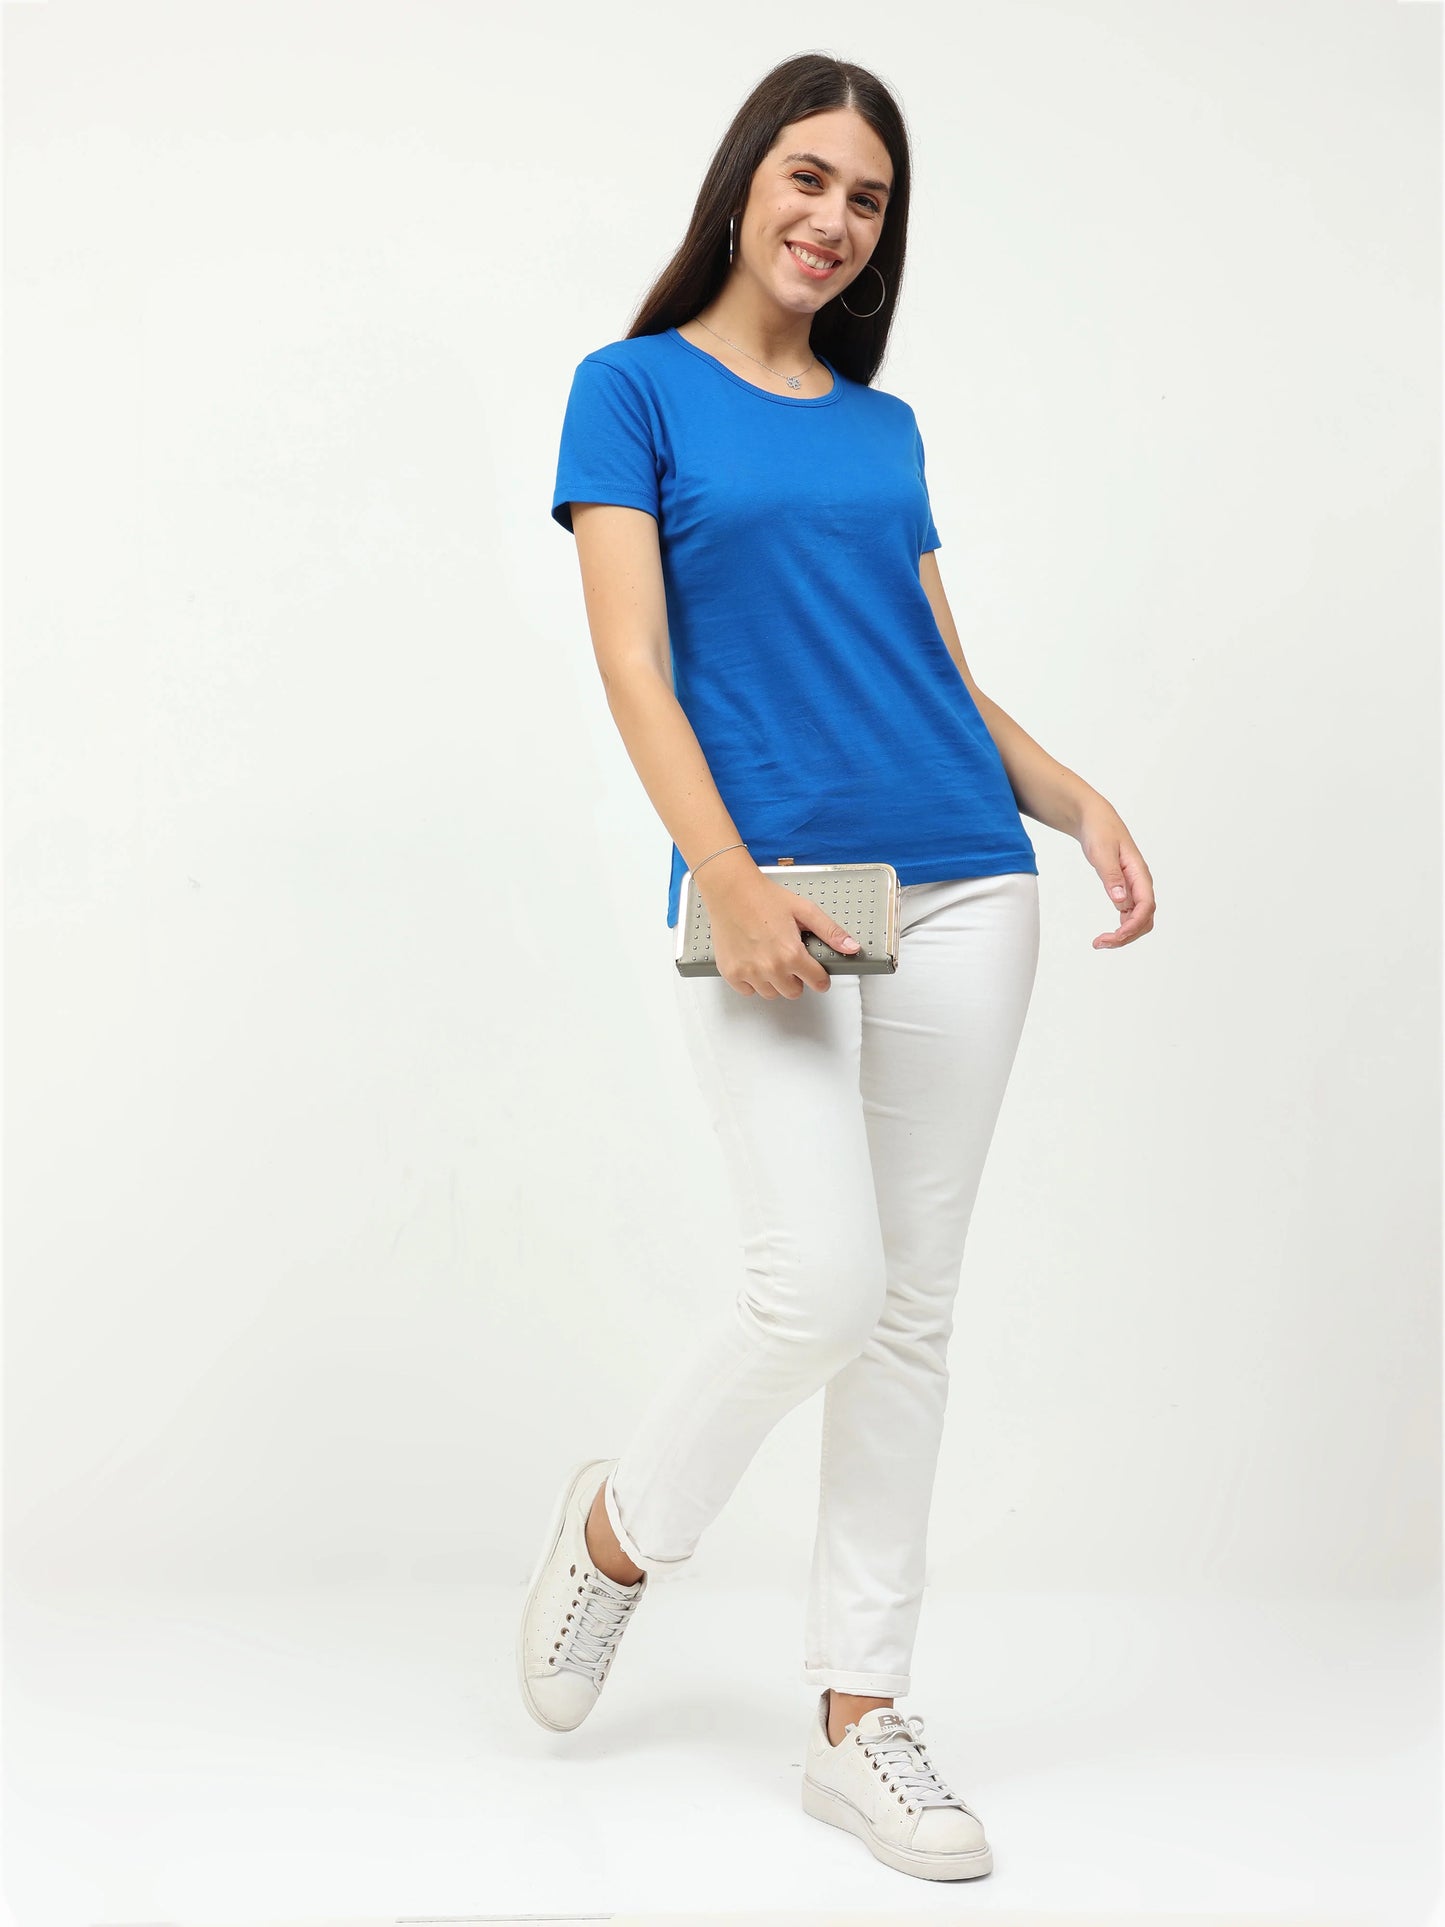 Women's Cotton Plain Round Neck Half Sleeve Royal Blue Color T-Shirt